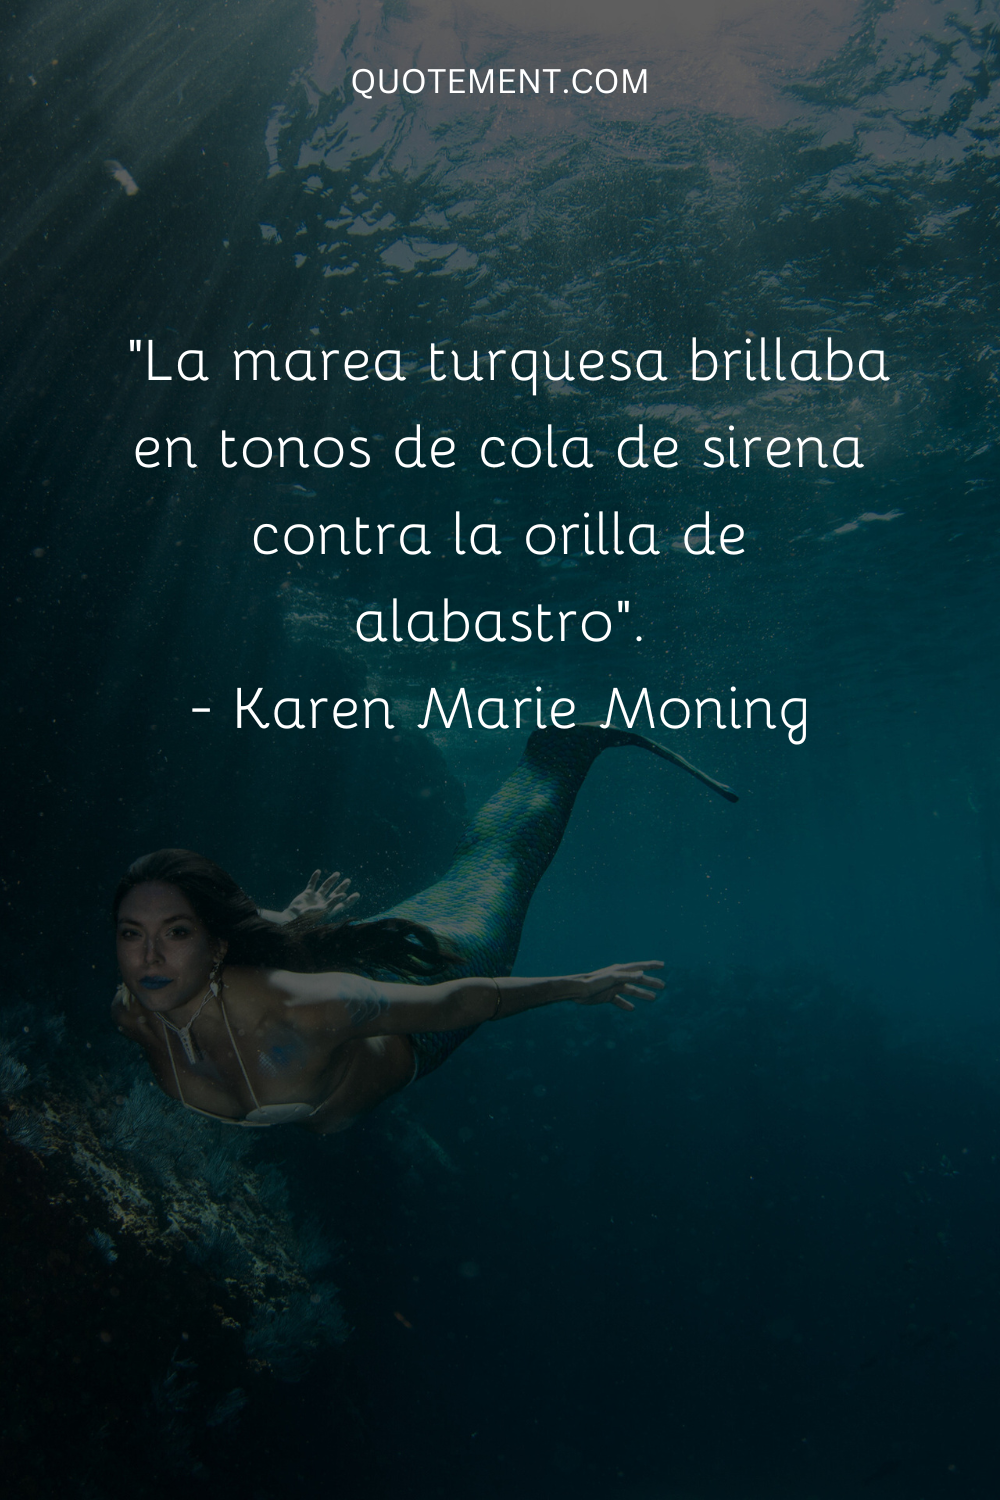 "La marea turquesa brillaba en tonos de cola de sirena contra la orilla de alabastro". - Karen Marie Moning